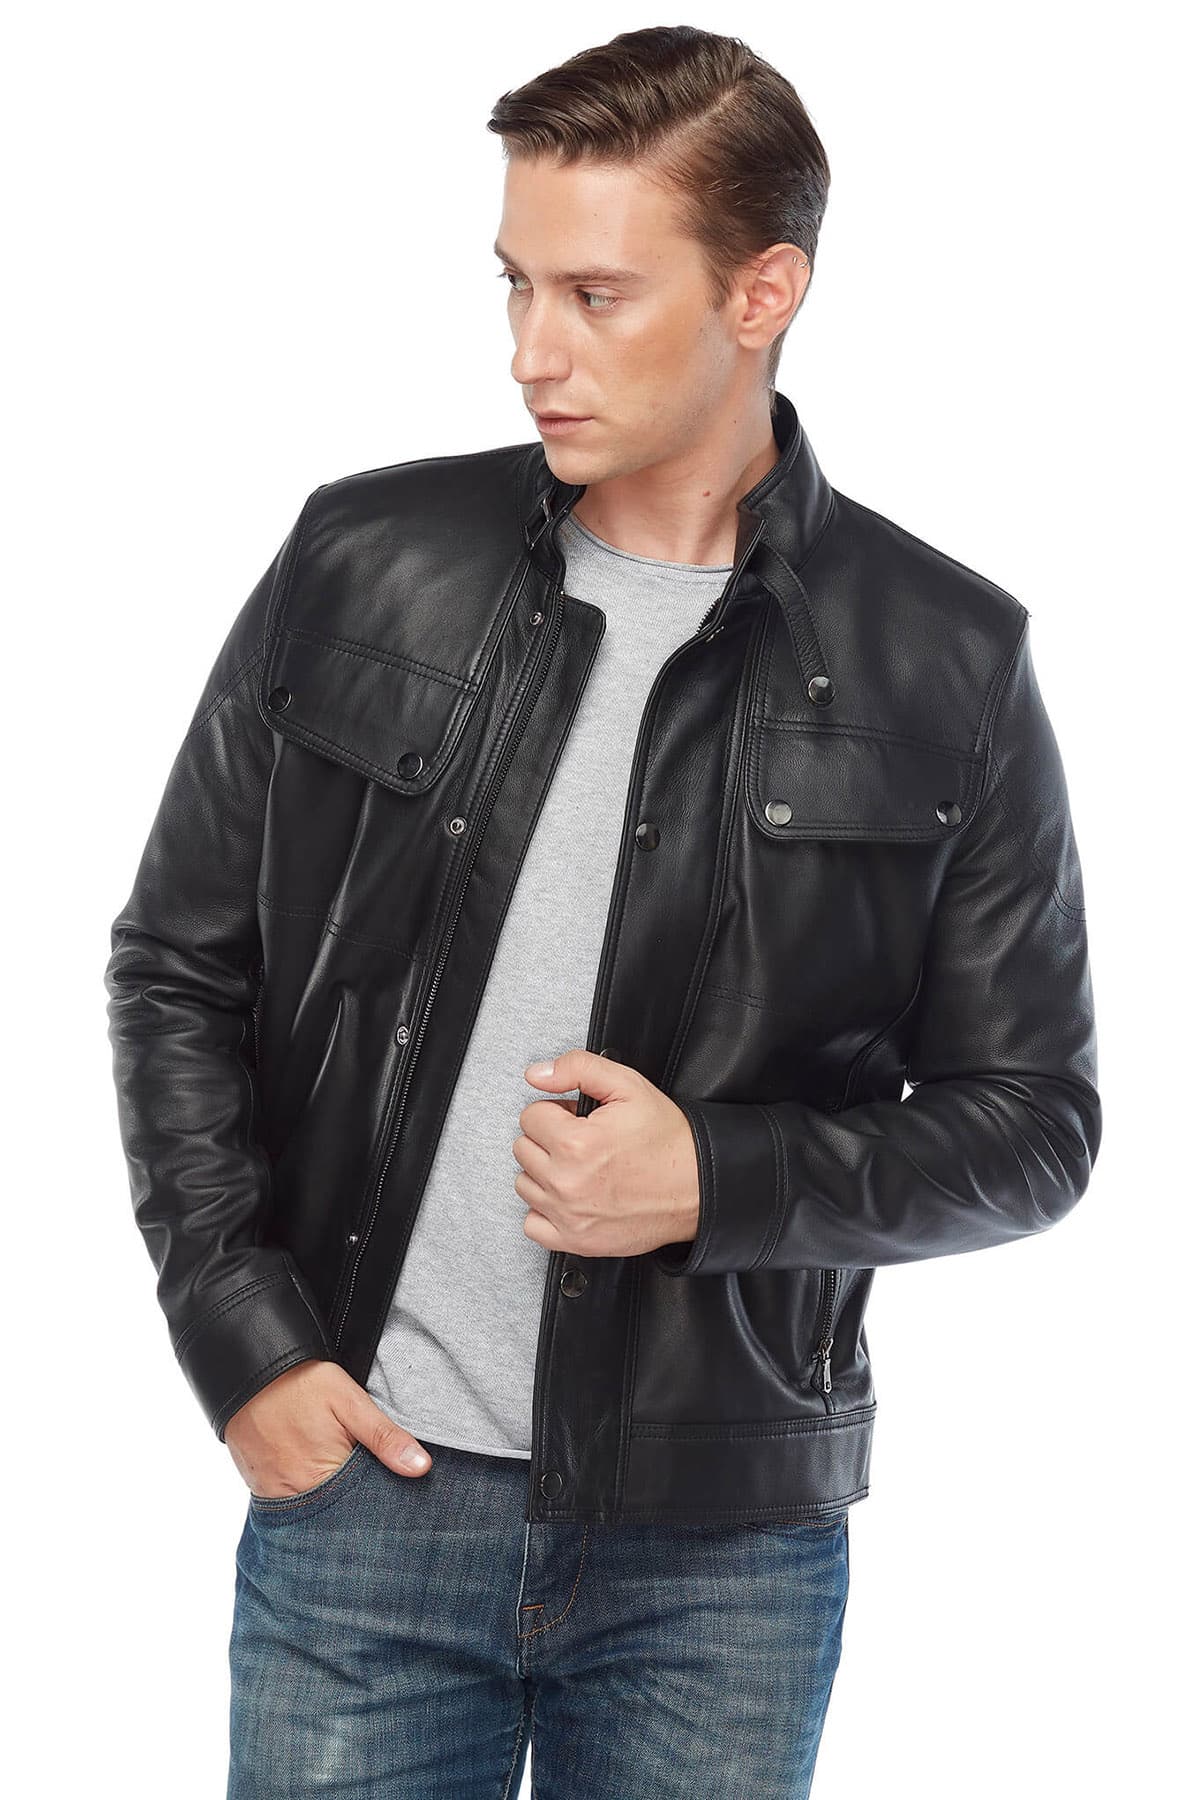 Brand New Men's David Beckham Leather Biker Jacket Vintage Biker Jacket  Genuine